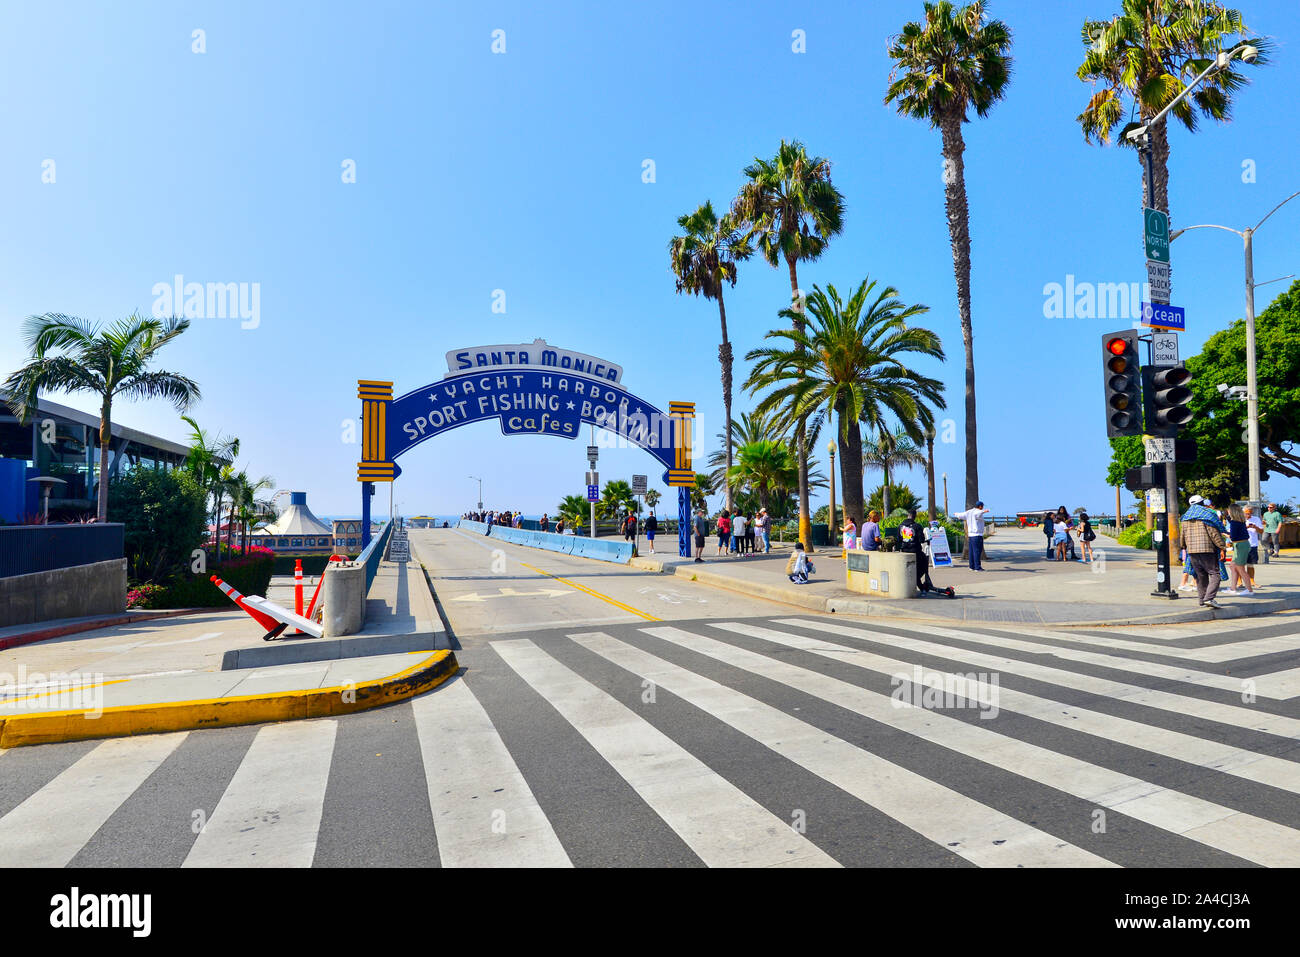 Entrée de la jetée de Santa Monica en arc sur le panneau indiquant l'entrée de la jetée et palm tree lined street Banque D'Images